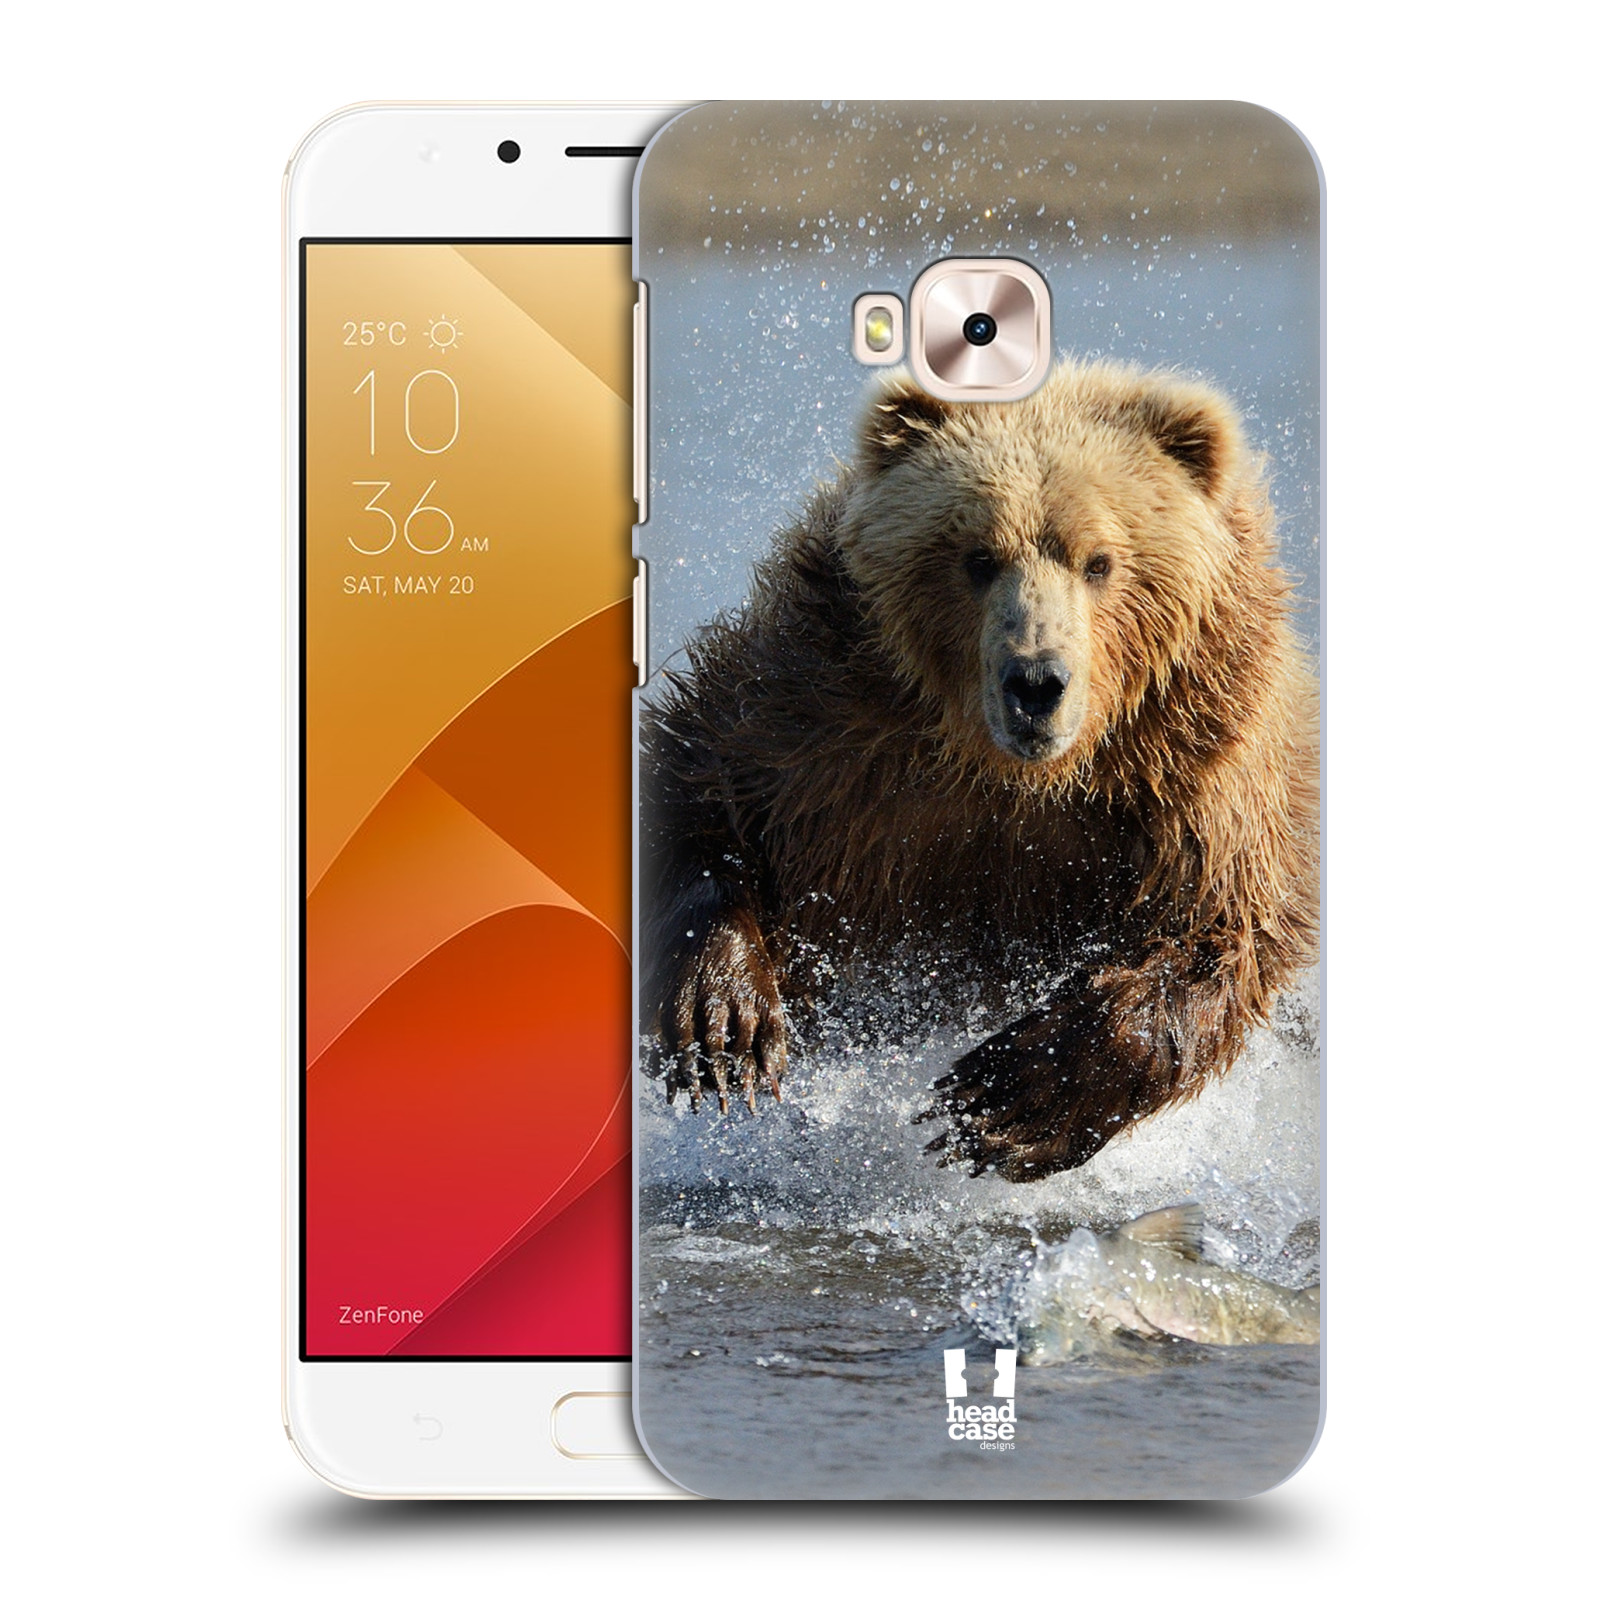 HEAD CASE plastový obal na mobil Asus Zenfone 4 Selfie Pro ZD552KL vzor Divočina, Divoký život a zvířata foto MEDVĚD GRIZZLY HŇEDÁ